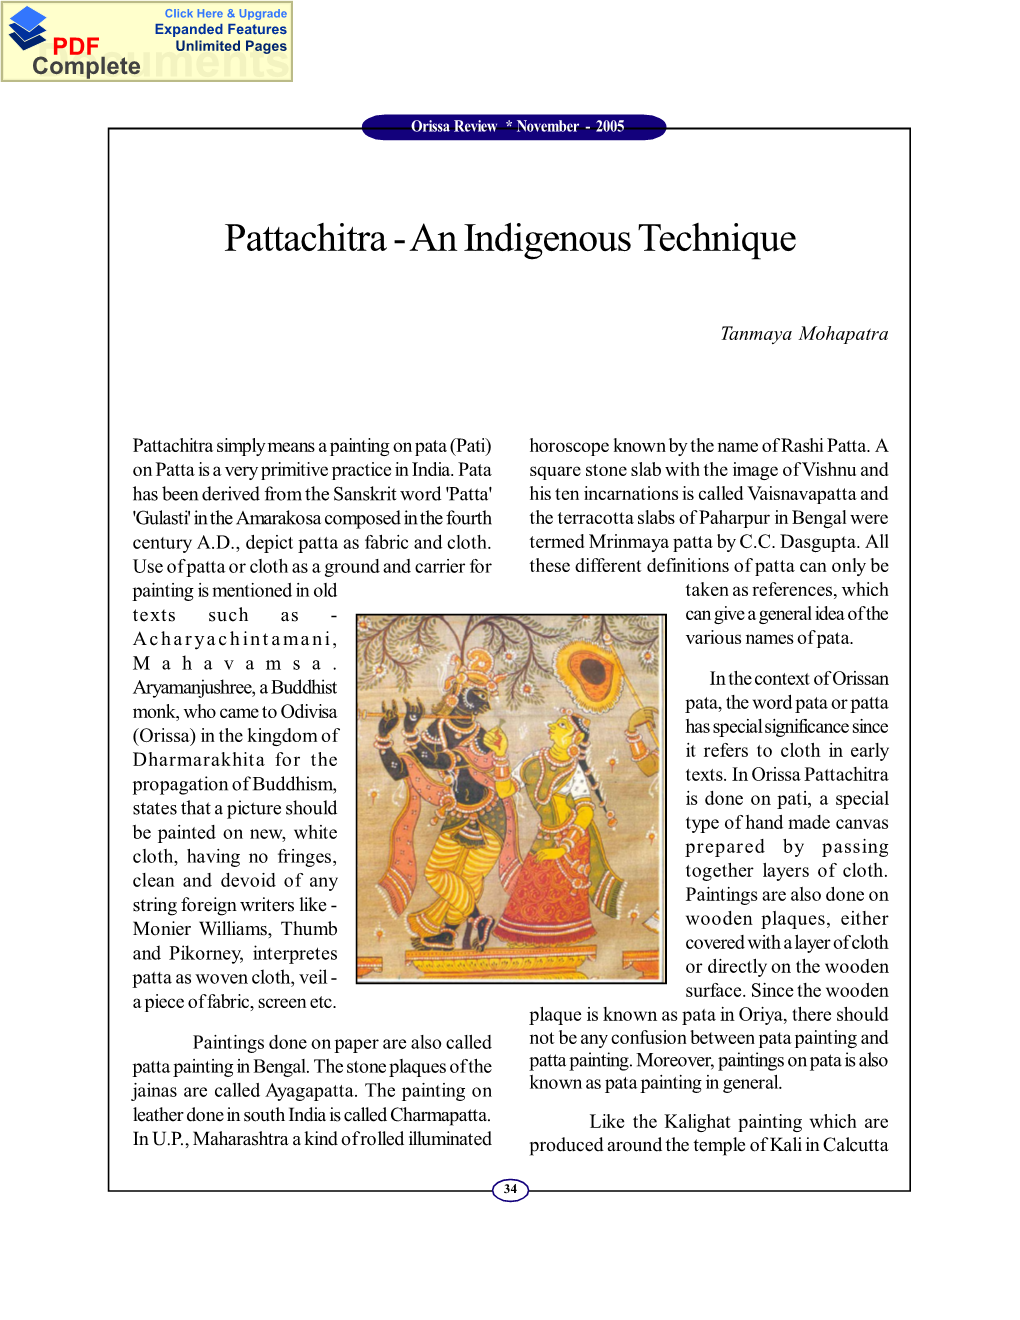 Pattachitra-An Indigenous Technique